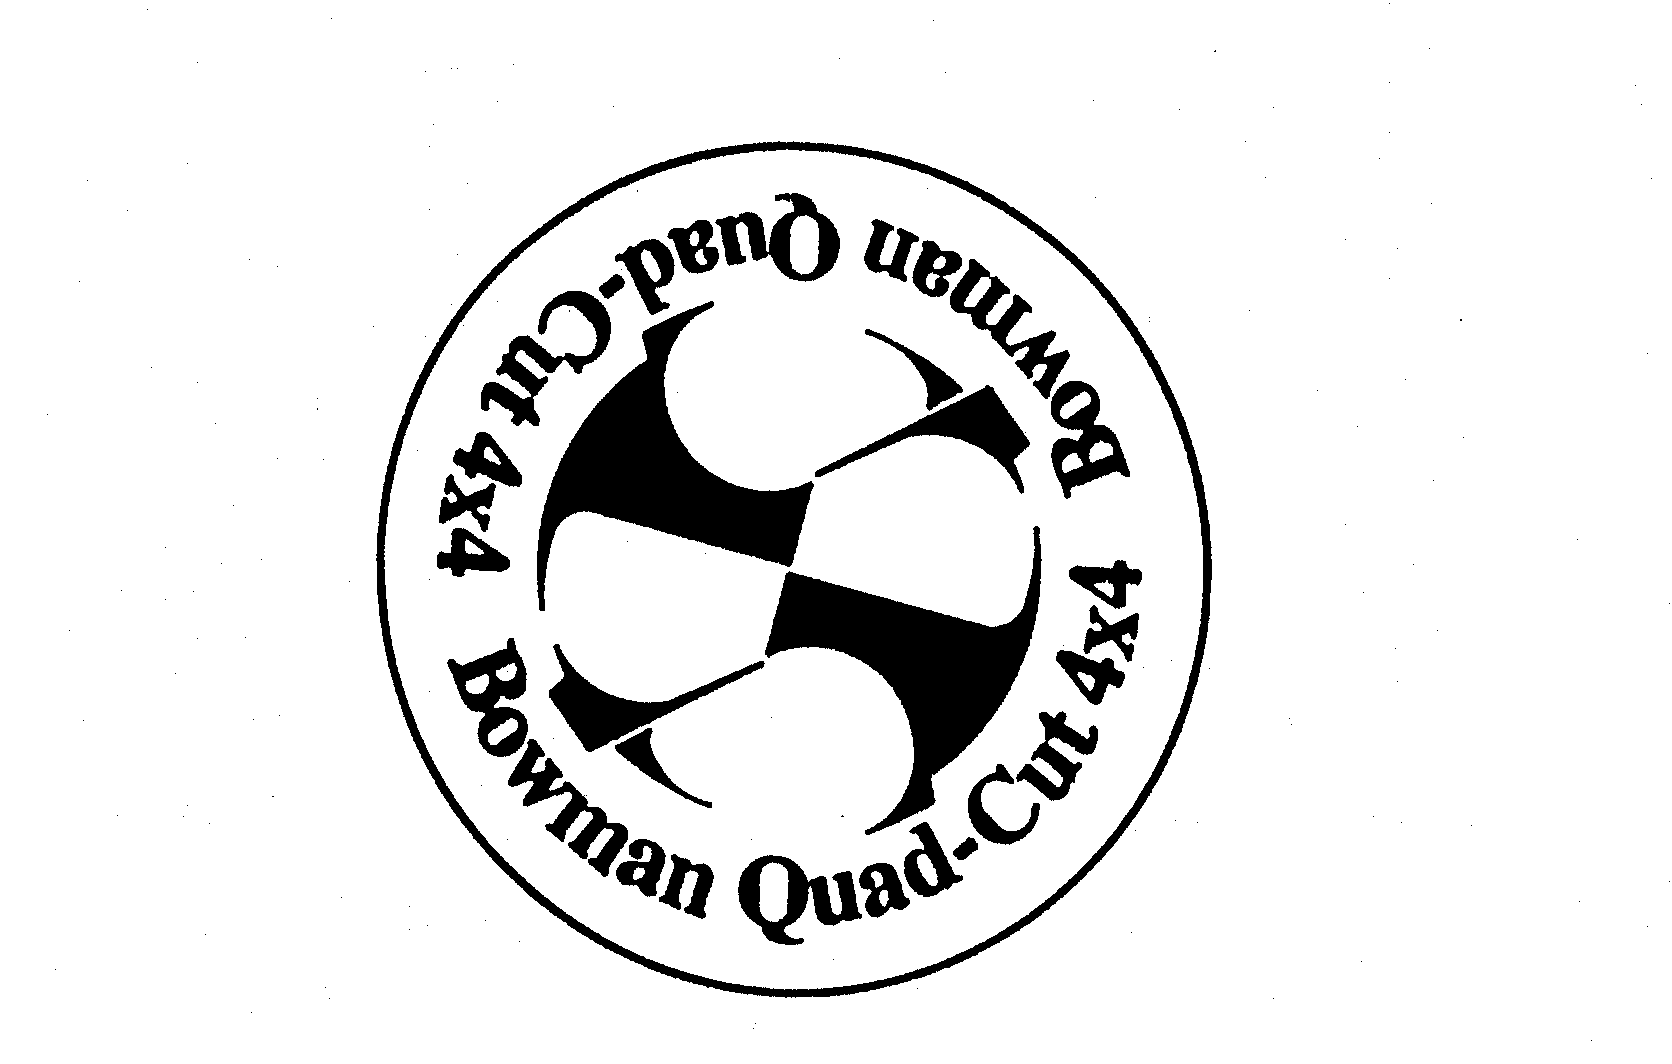  BOWMAN QUAD-CUT 4X4